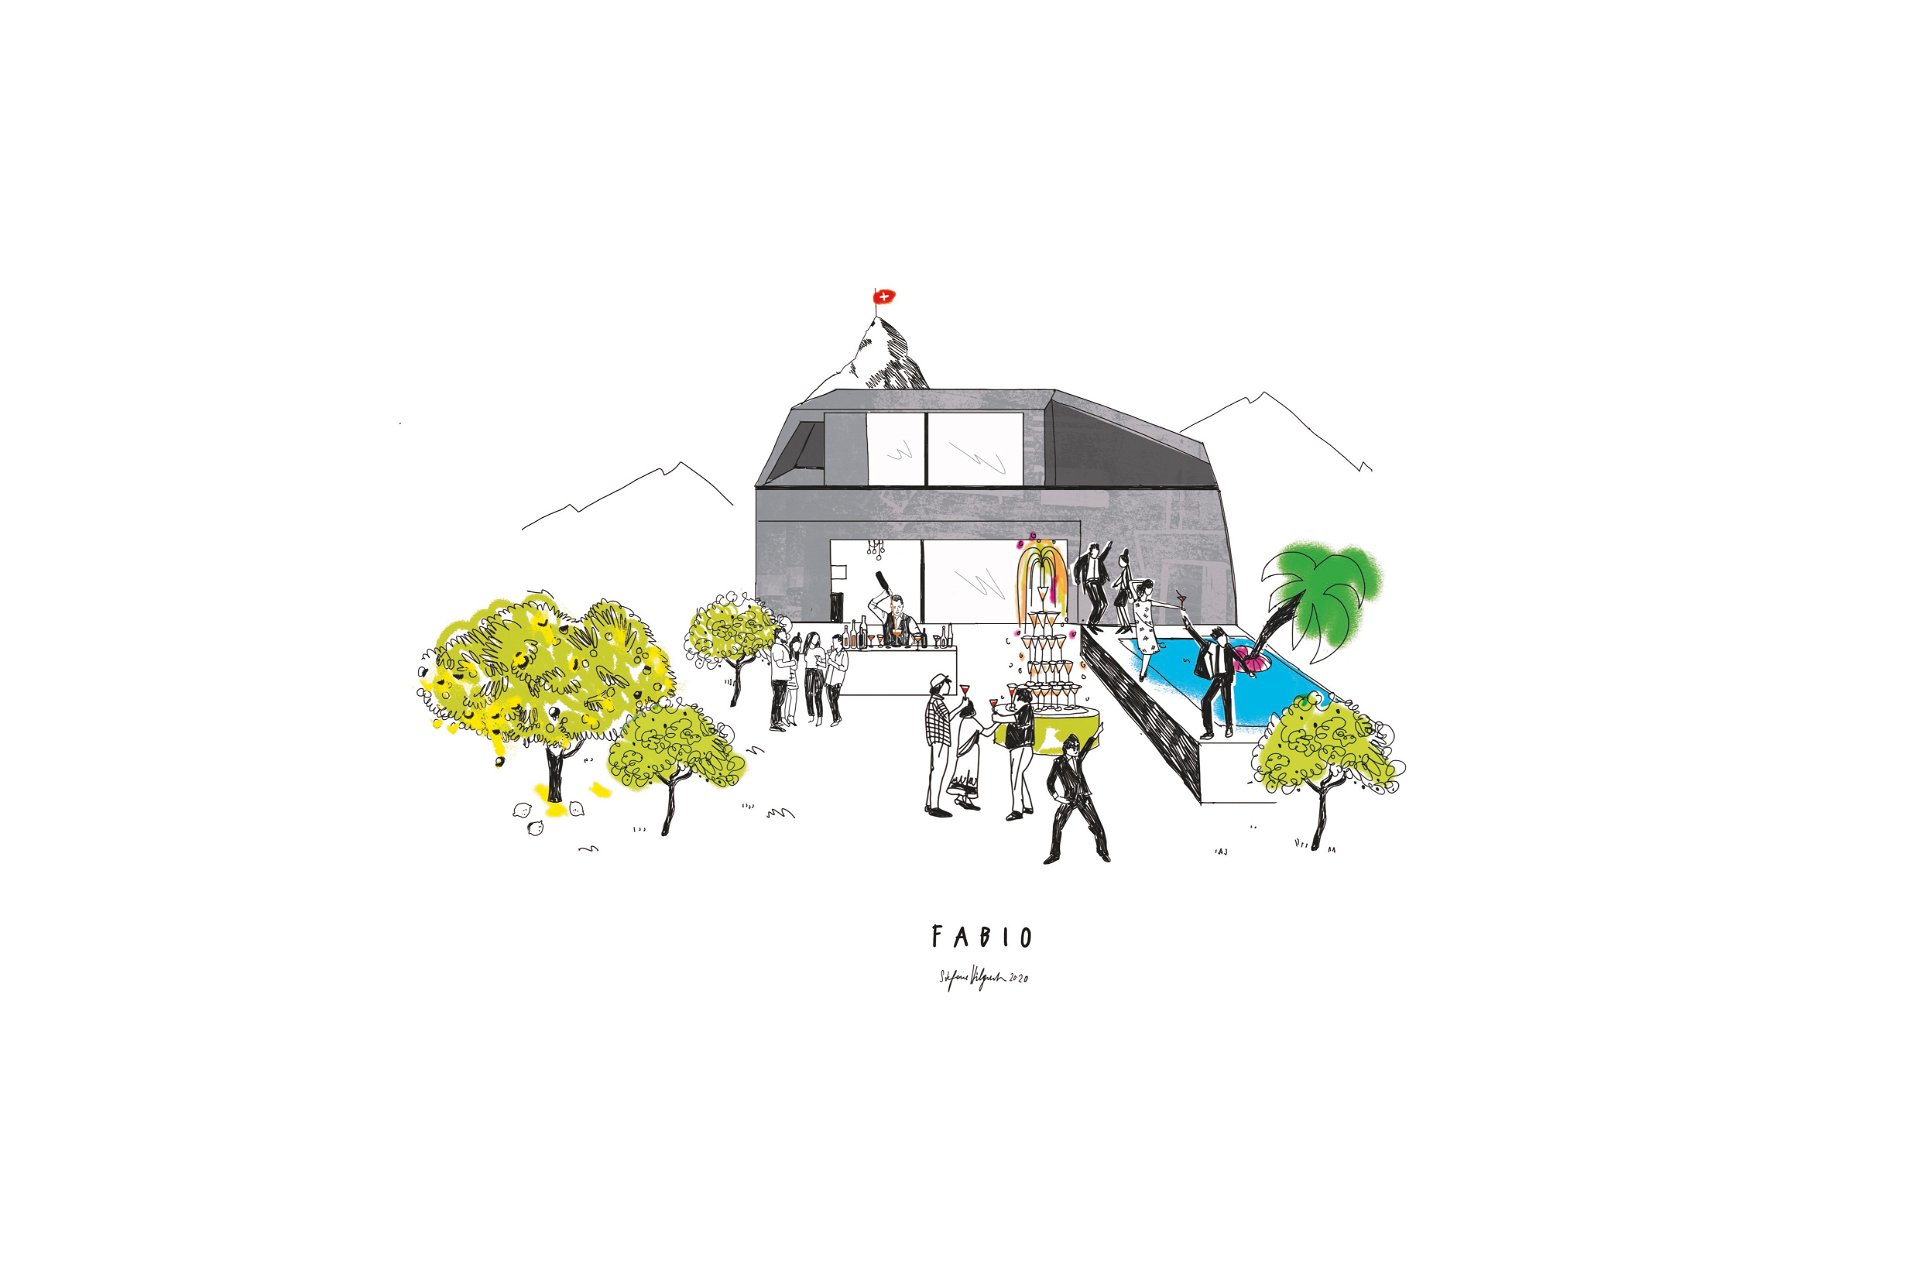 Visualisierung einer Vision: Die schnelle Skizze nach dem Erstgespräch diente Wunschhaus als Grundlage für die Ausarbeitung und Konkretisierung des fiktiven Fabio-Wunschhauses.